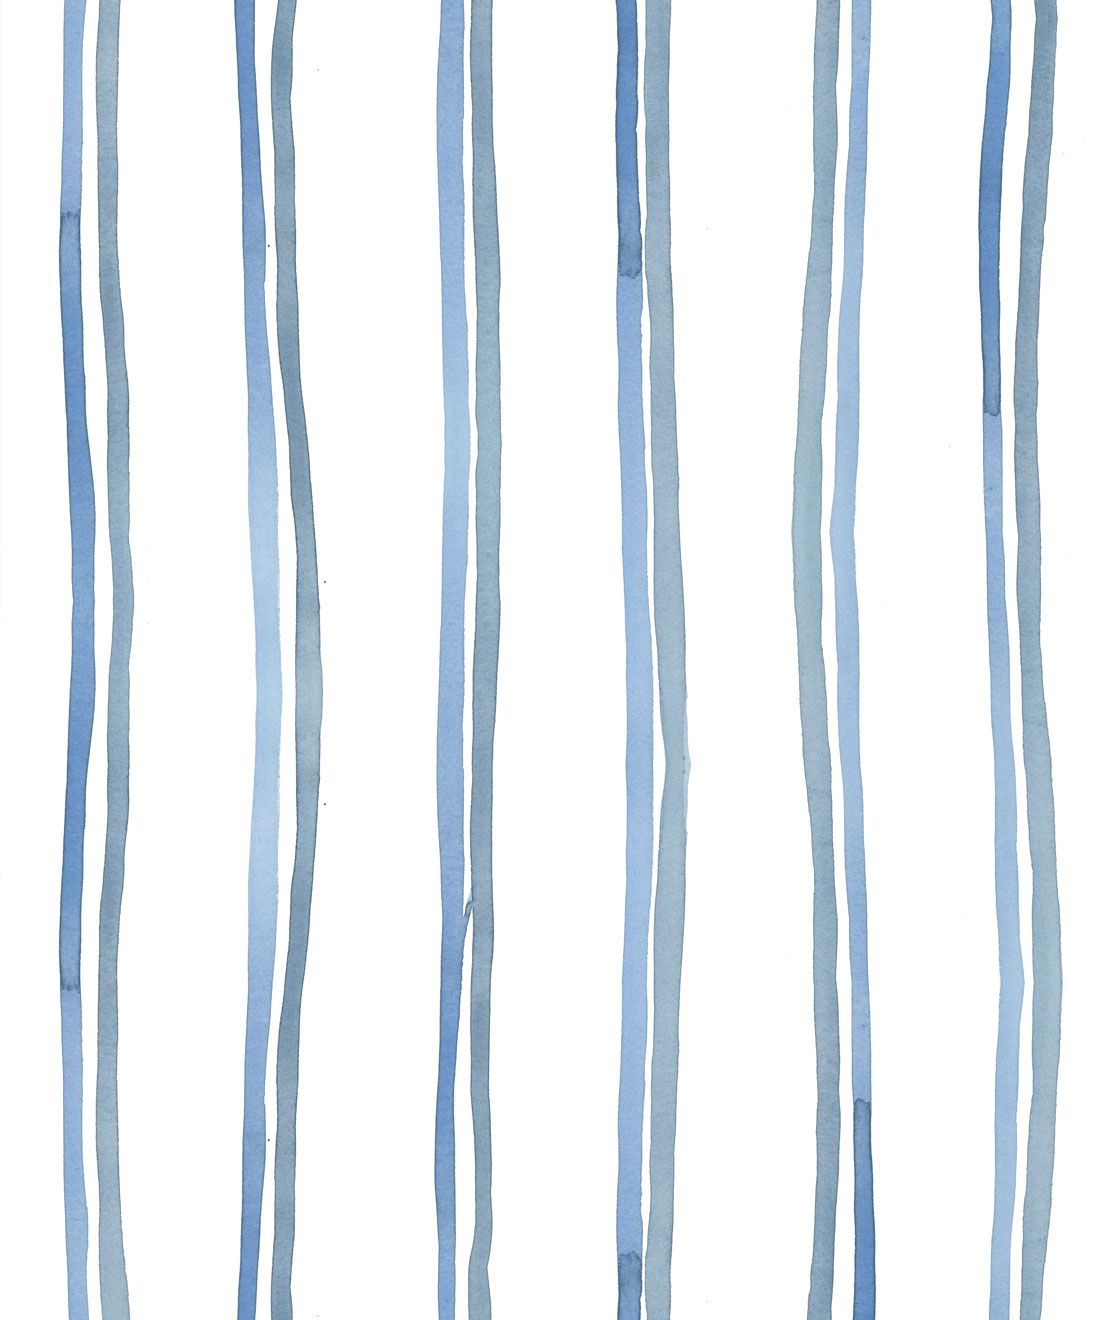 Double Inky Stripe • Striped Wallpaper • Blue Striped Design • Georgia MacMillan • Milton & King USA